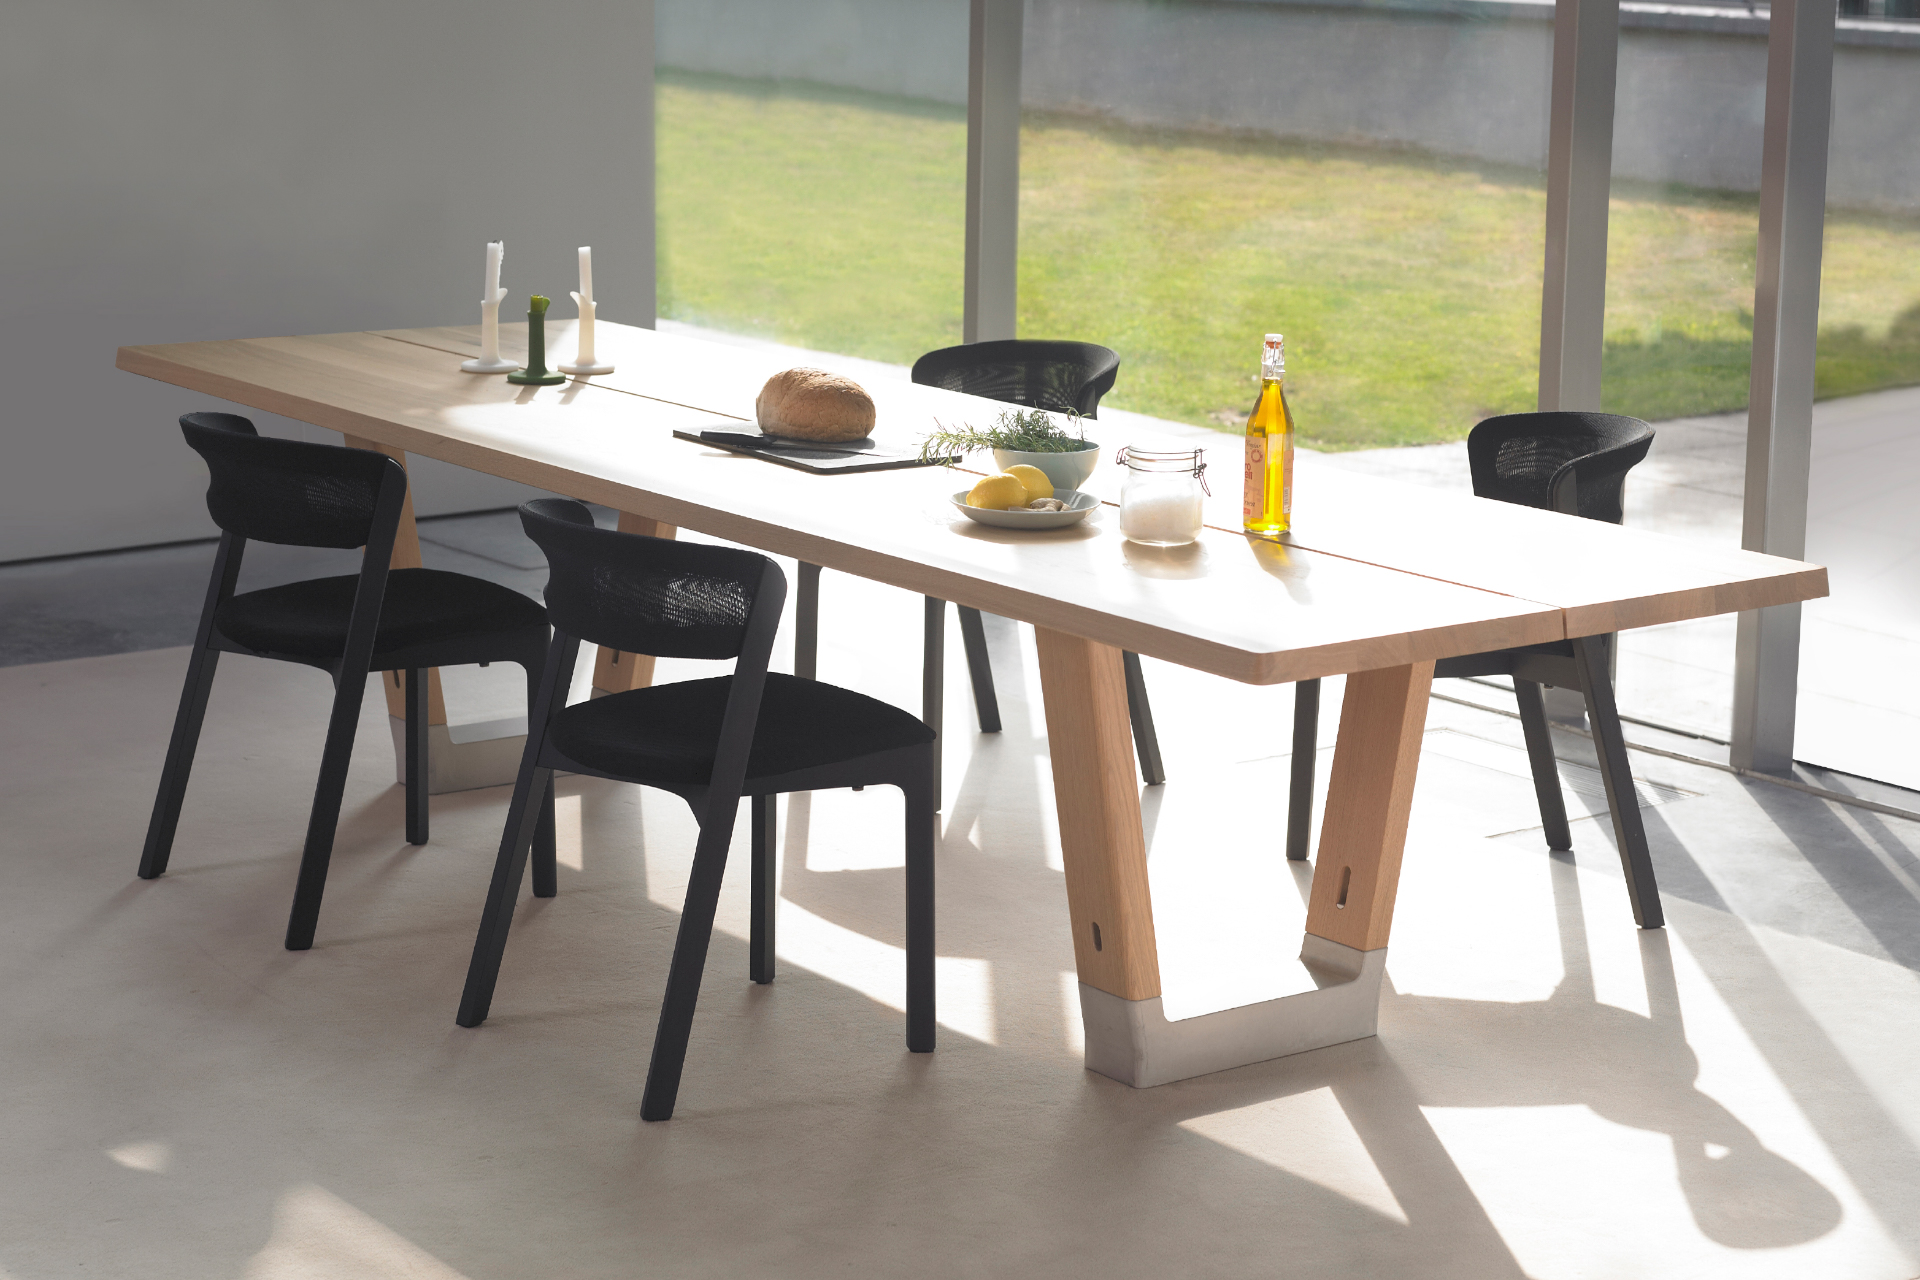 Extractie rit bijl Design tafel Base | Design Tafels van Arco